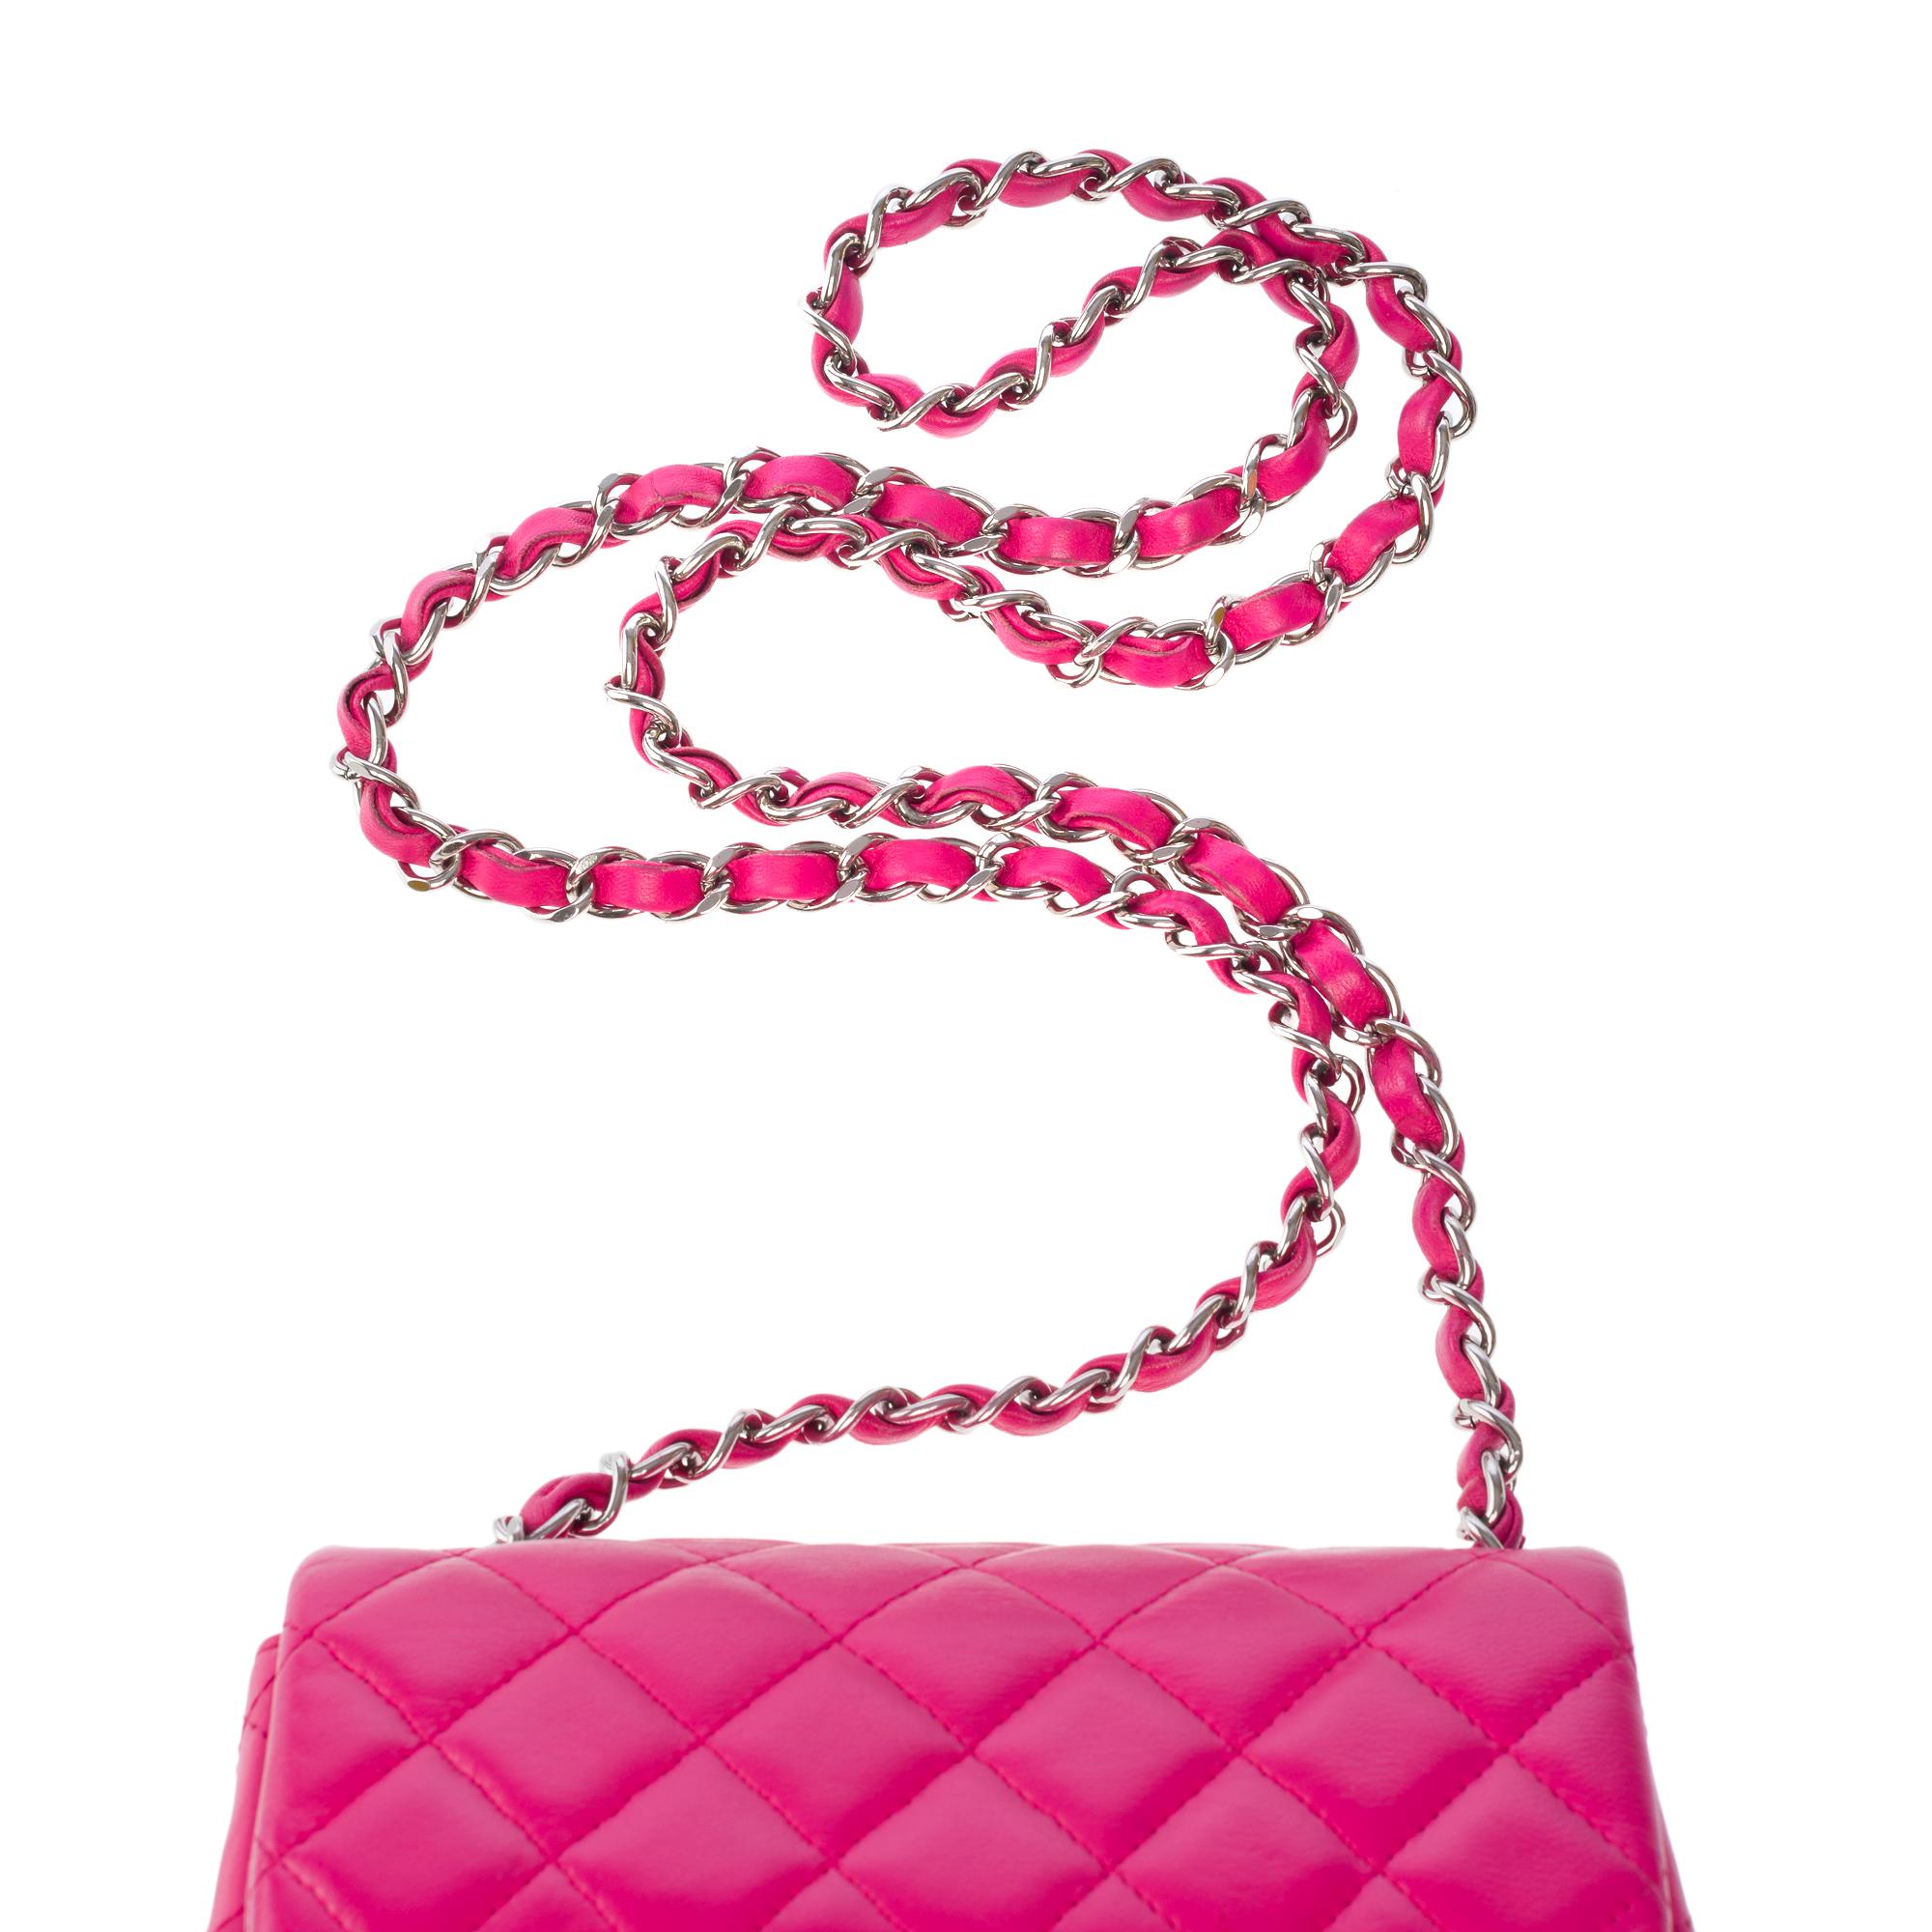 Wunderschöne Chanel Mini Timeless Umhängetasche mit Überschlag aus gestepptem Leder in Rosa, SHW 5